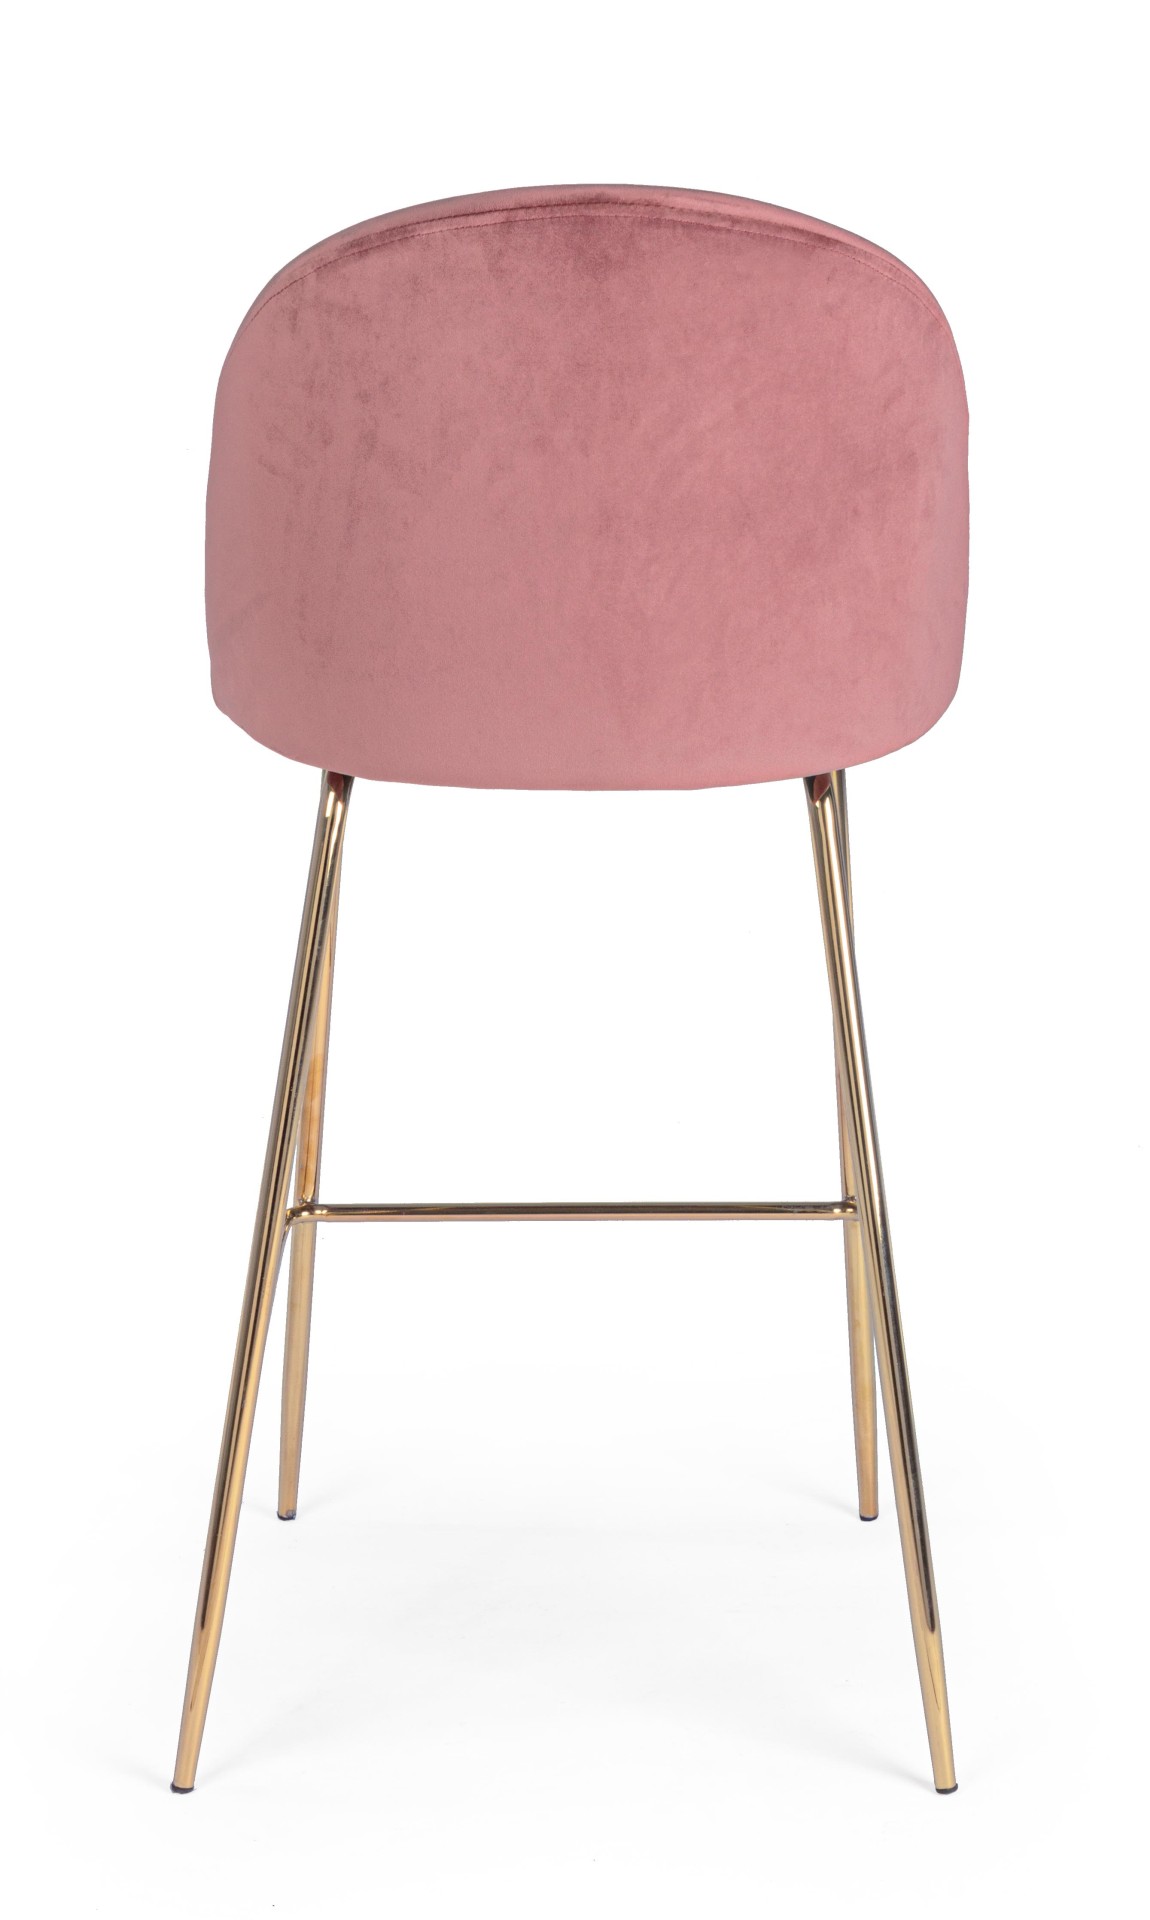 Der Barhocker Carry überzeugt mit seinem moderndem Design. Gefertigt wurde er aus Samt, welches einen rosa Farbton besitzt. Das Gestell ist aus Metall und hat eine goldene Farbe. Die Sitzhöhe des Hockers beträgt 74 cm.